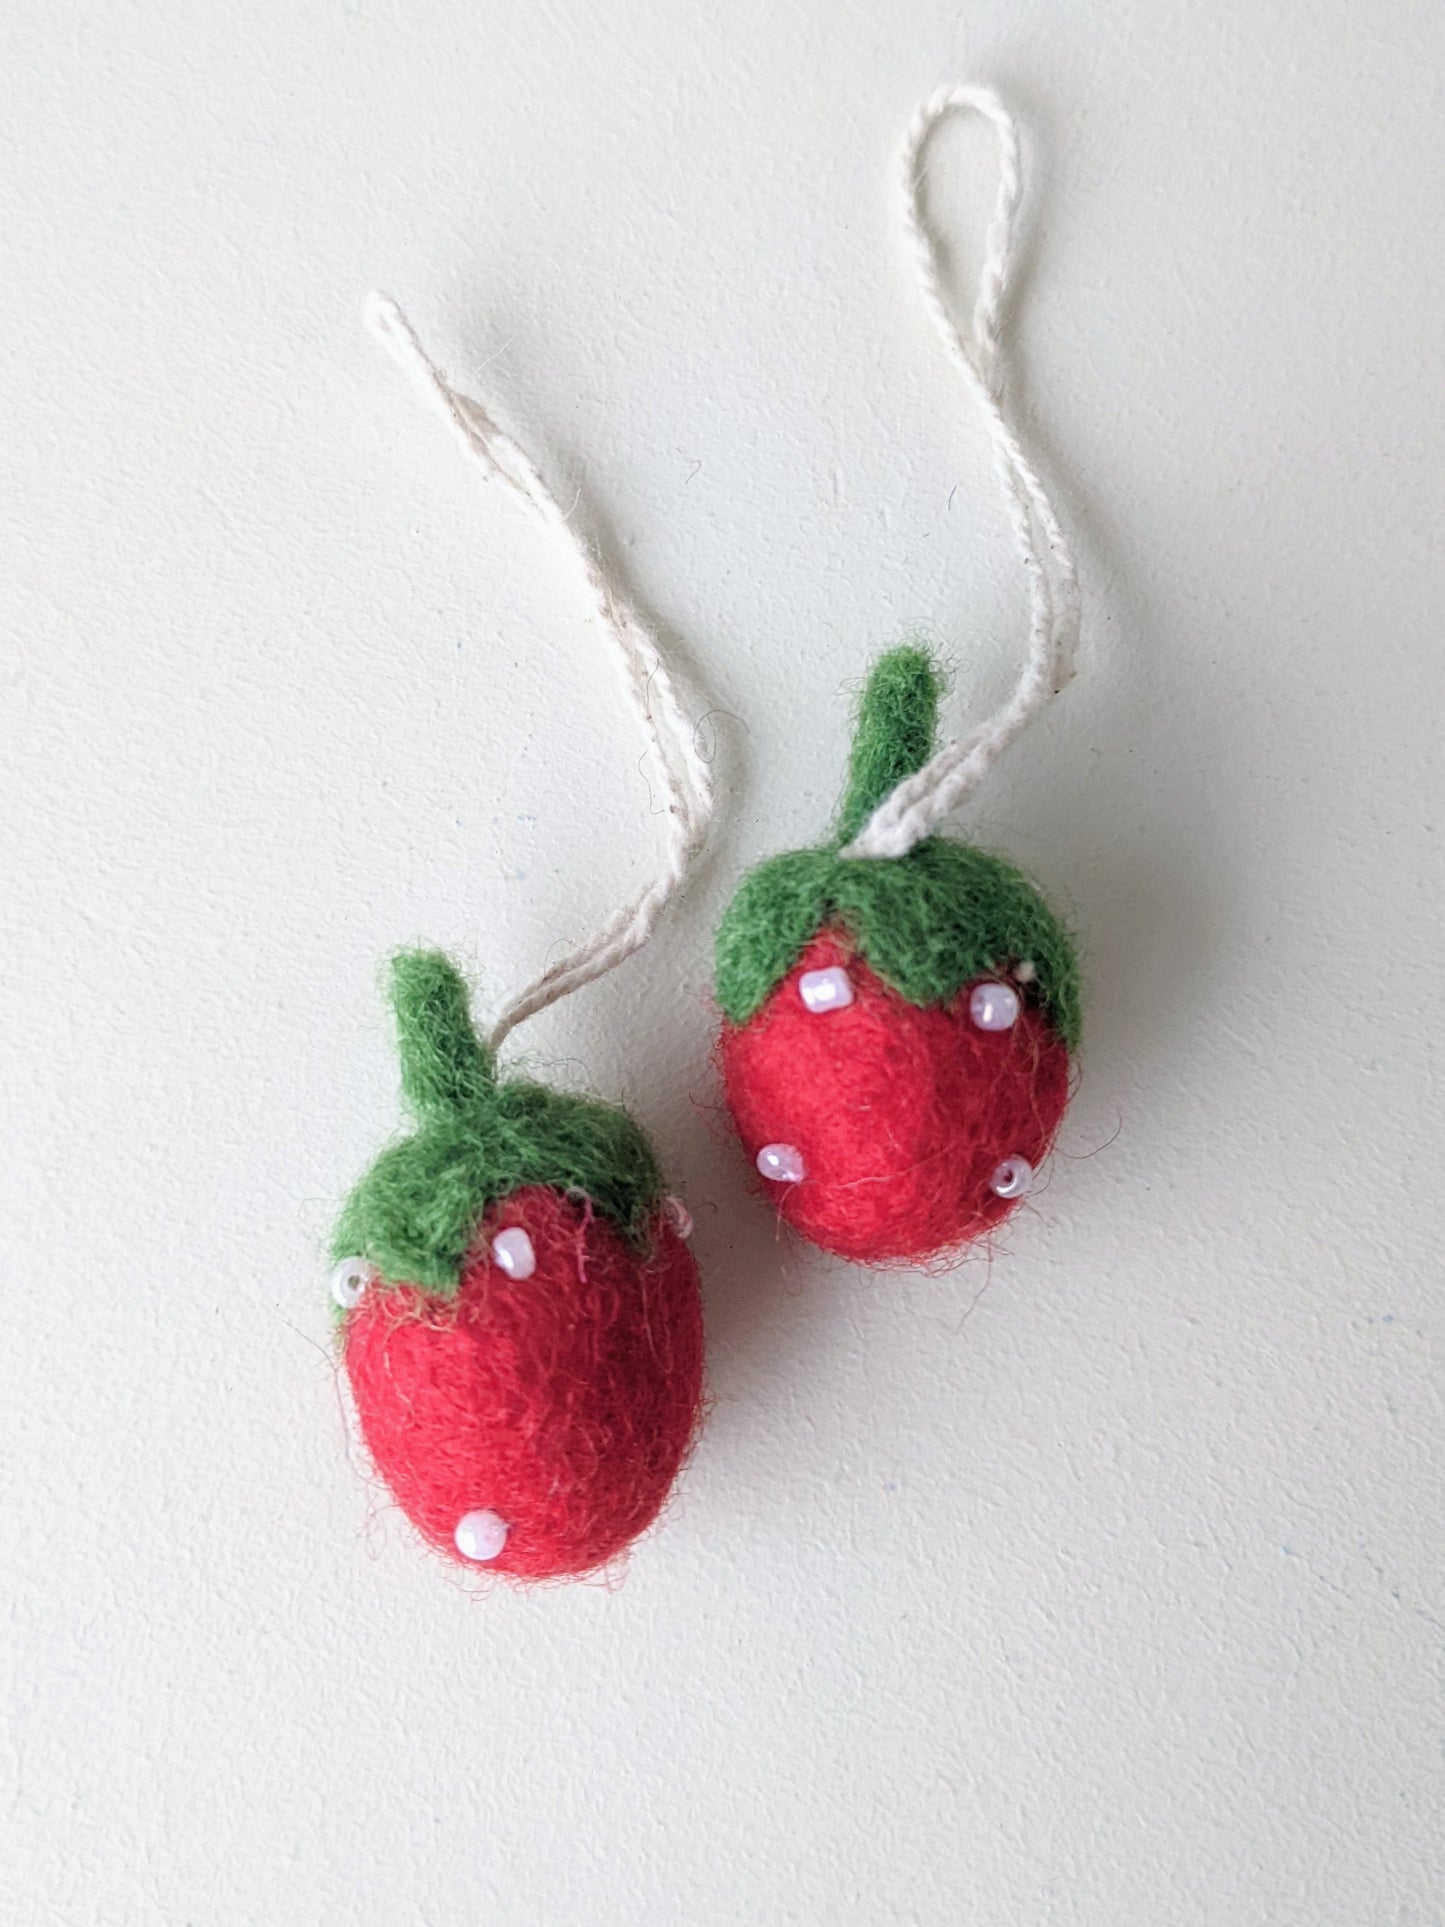 Mini Strawberry Ornament